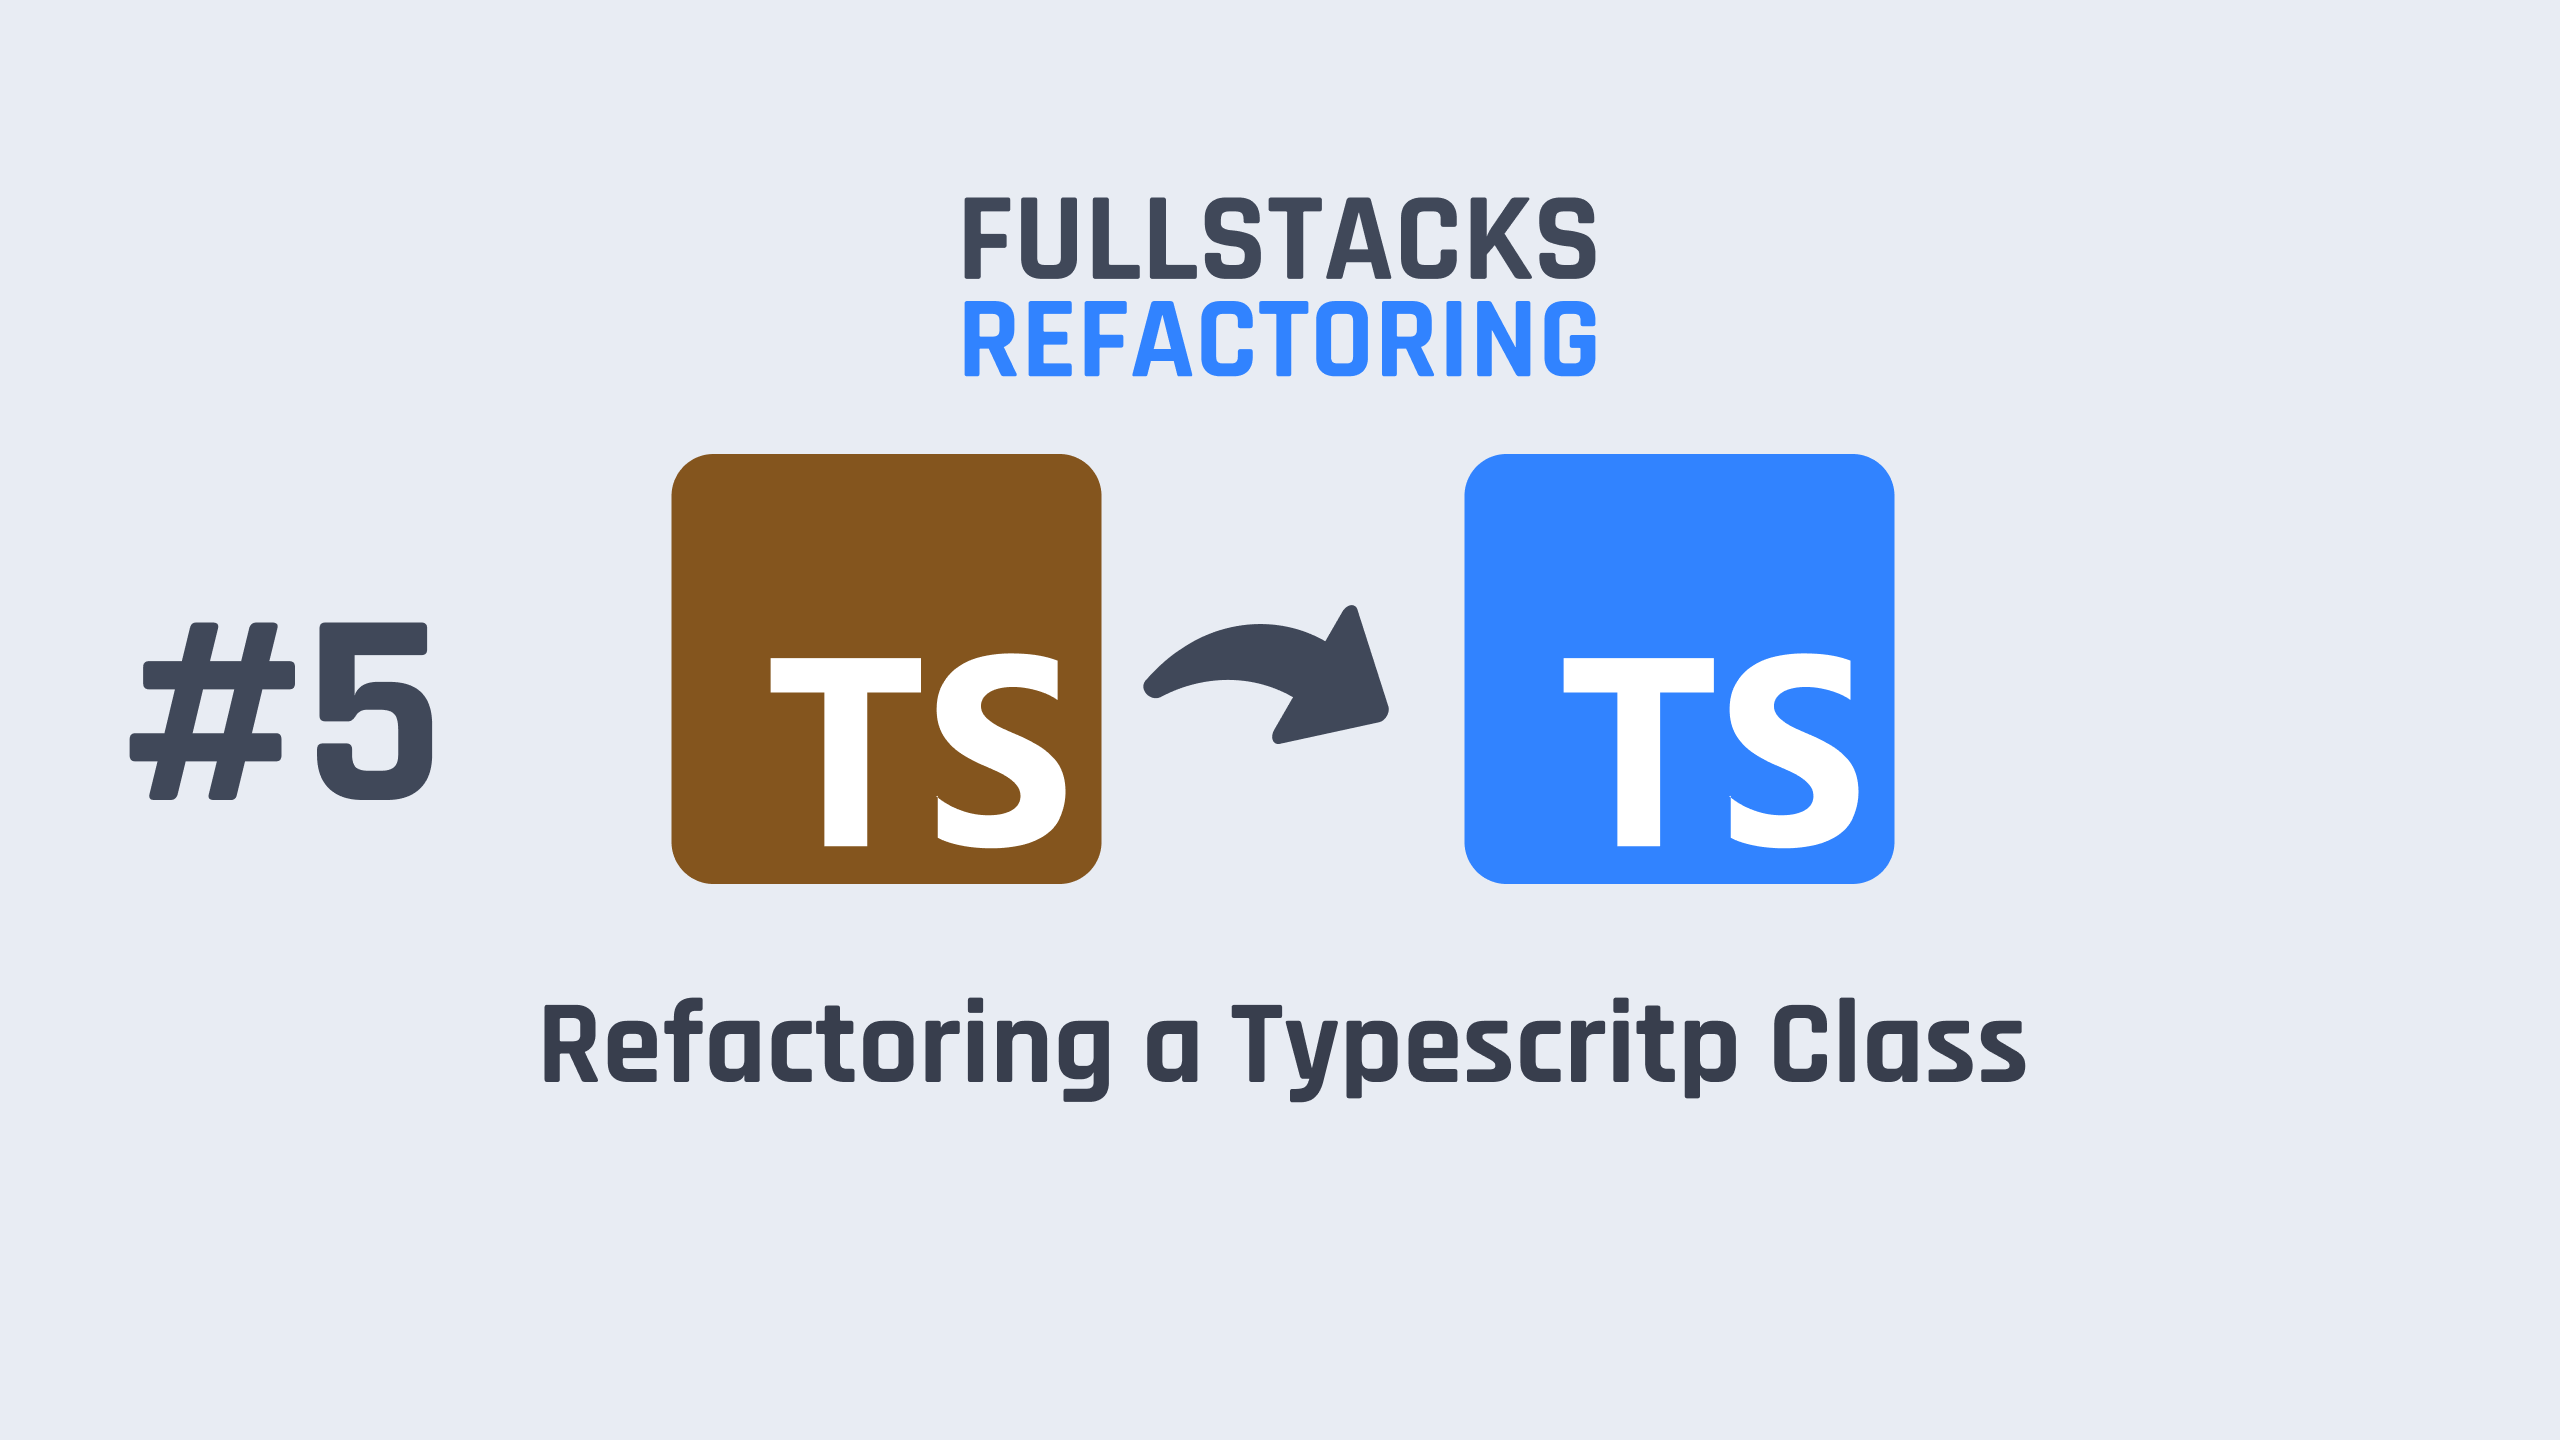 Refactoring a TyepScript Class